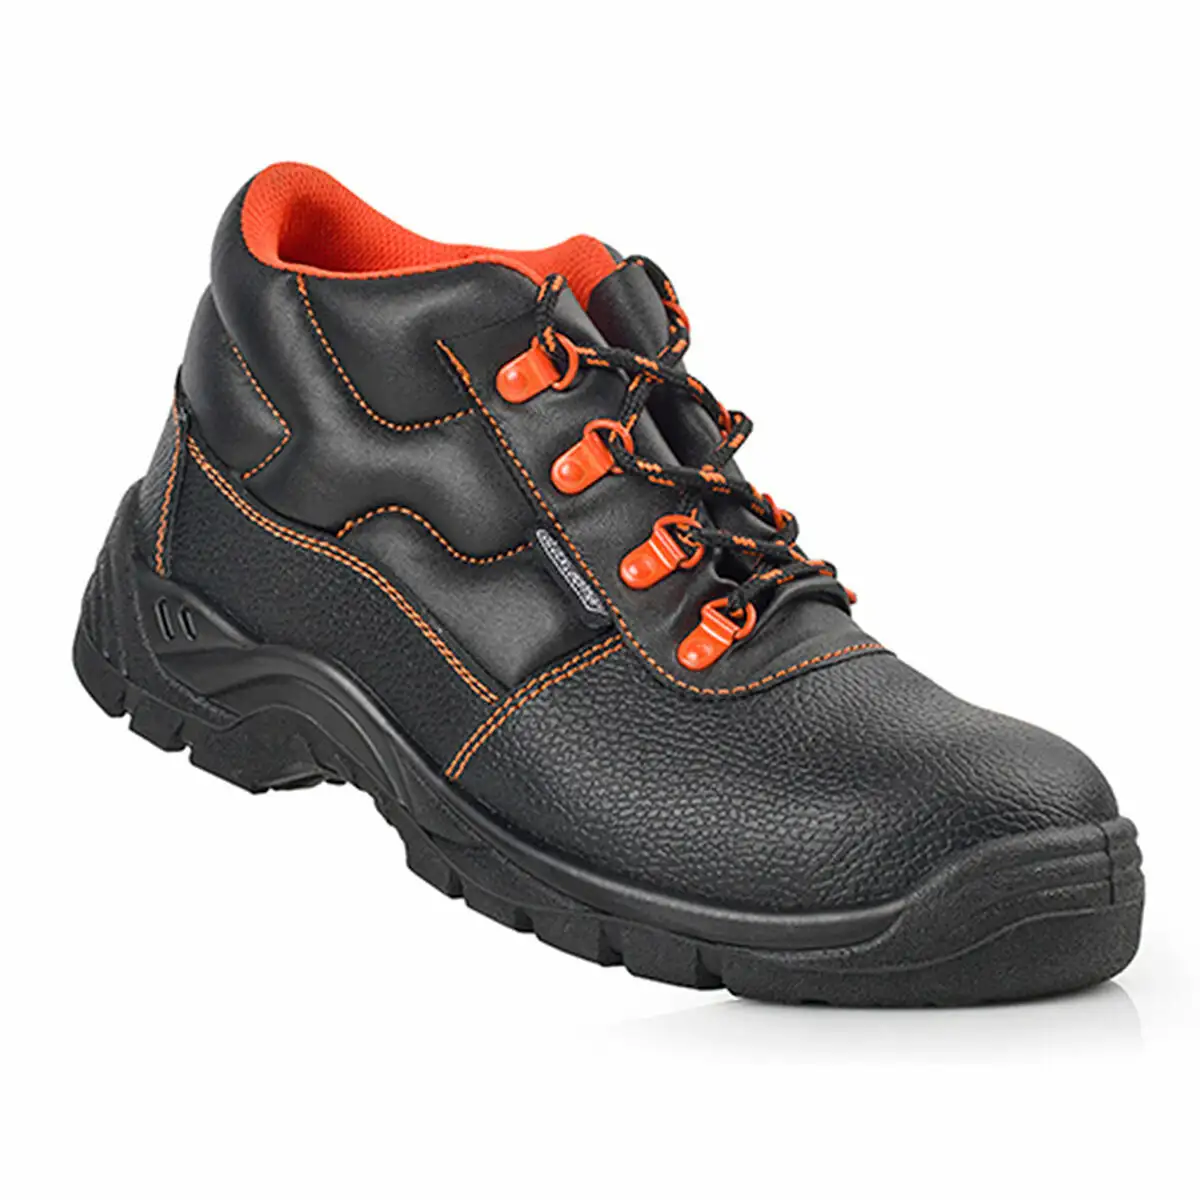 Chaussures de securite s3 src blackleather noir cuir_8848. DIAYTAR SENEGAL - Où Votre Shopping Prend Vie. Explorez notre boutique en ligne pour trouver des articles qui vous ressemblent et qui ajoutent de l'éclat à votre quotidien.